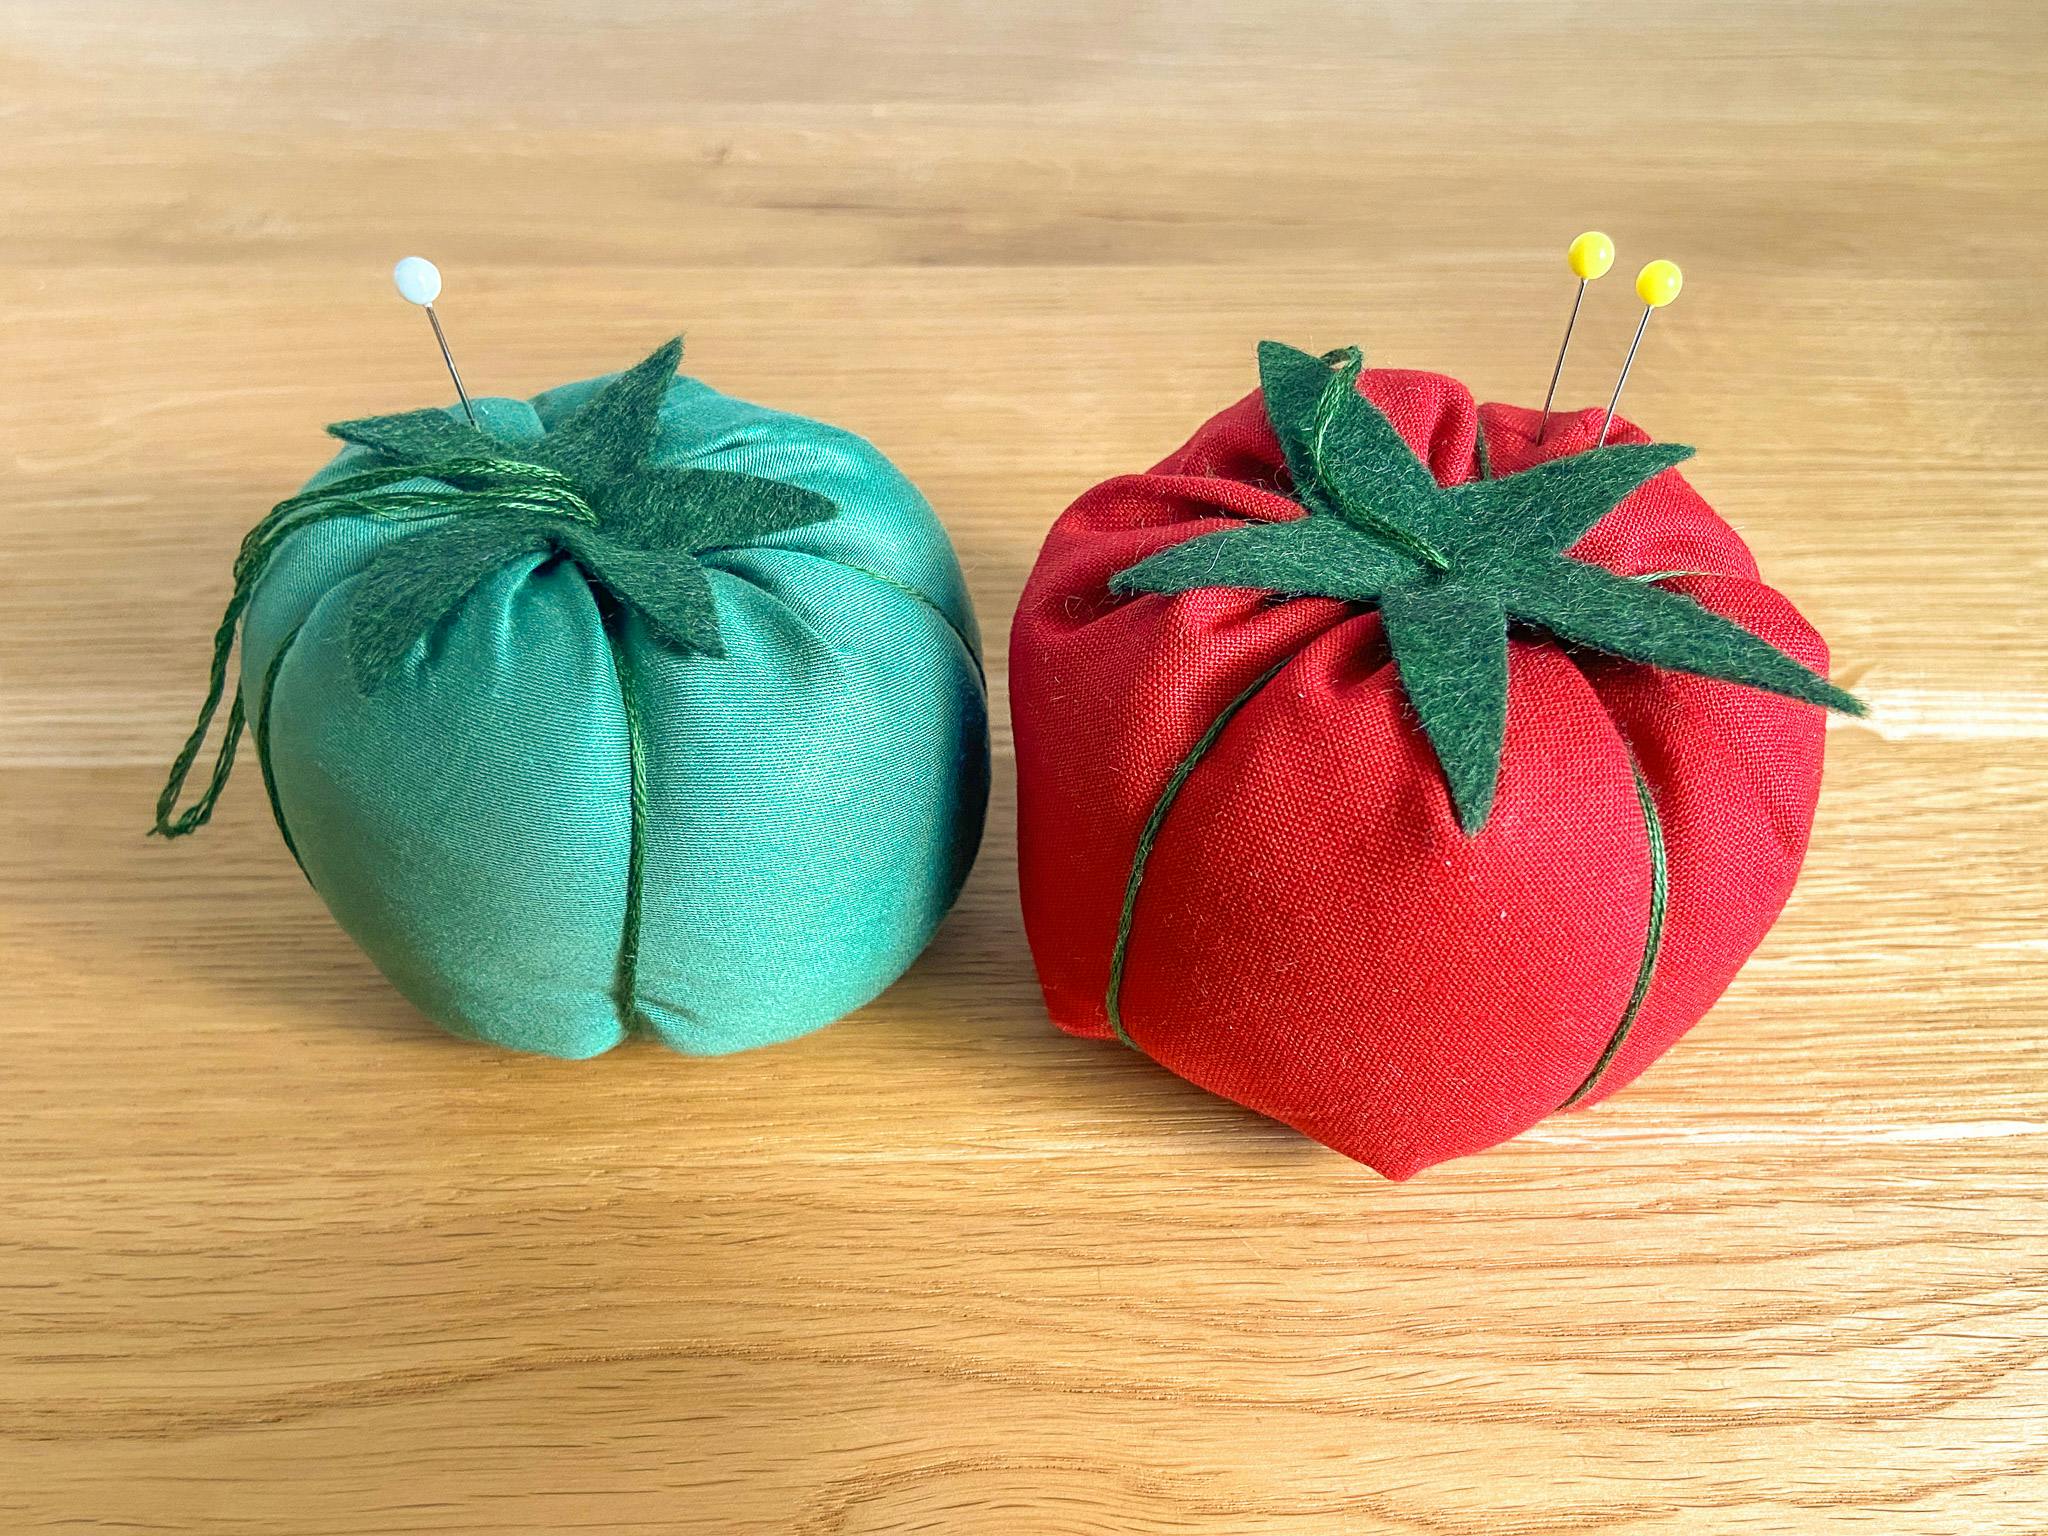 Coussins pique aiguilles tomate faits mains en vert et rouge